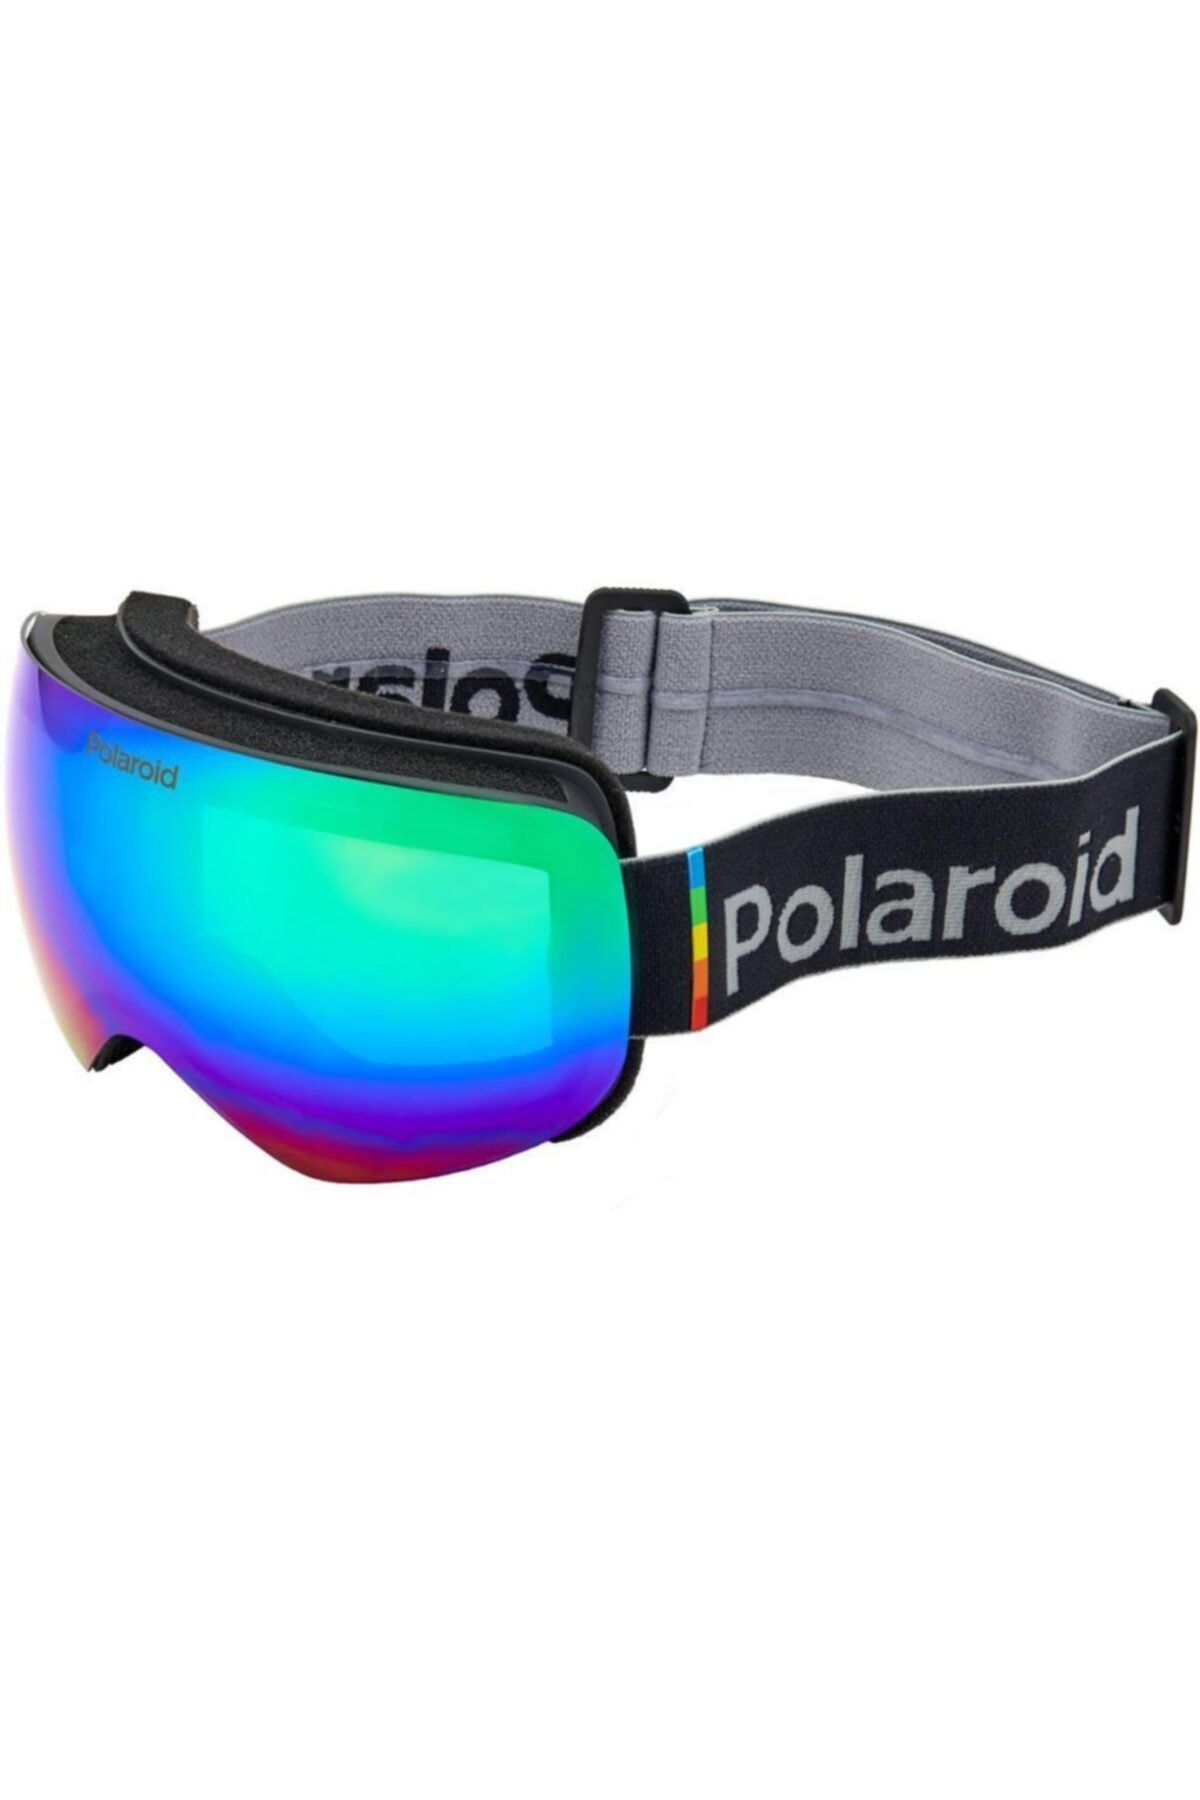 Polaroid Mask 01 9ks 5z Polarize Kayak Gözlüğü